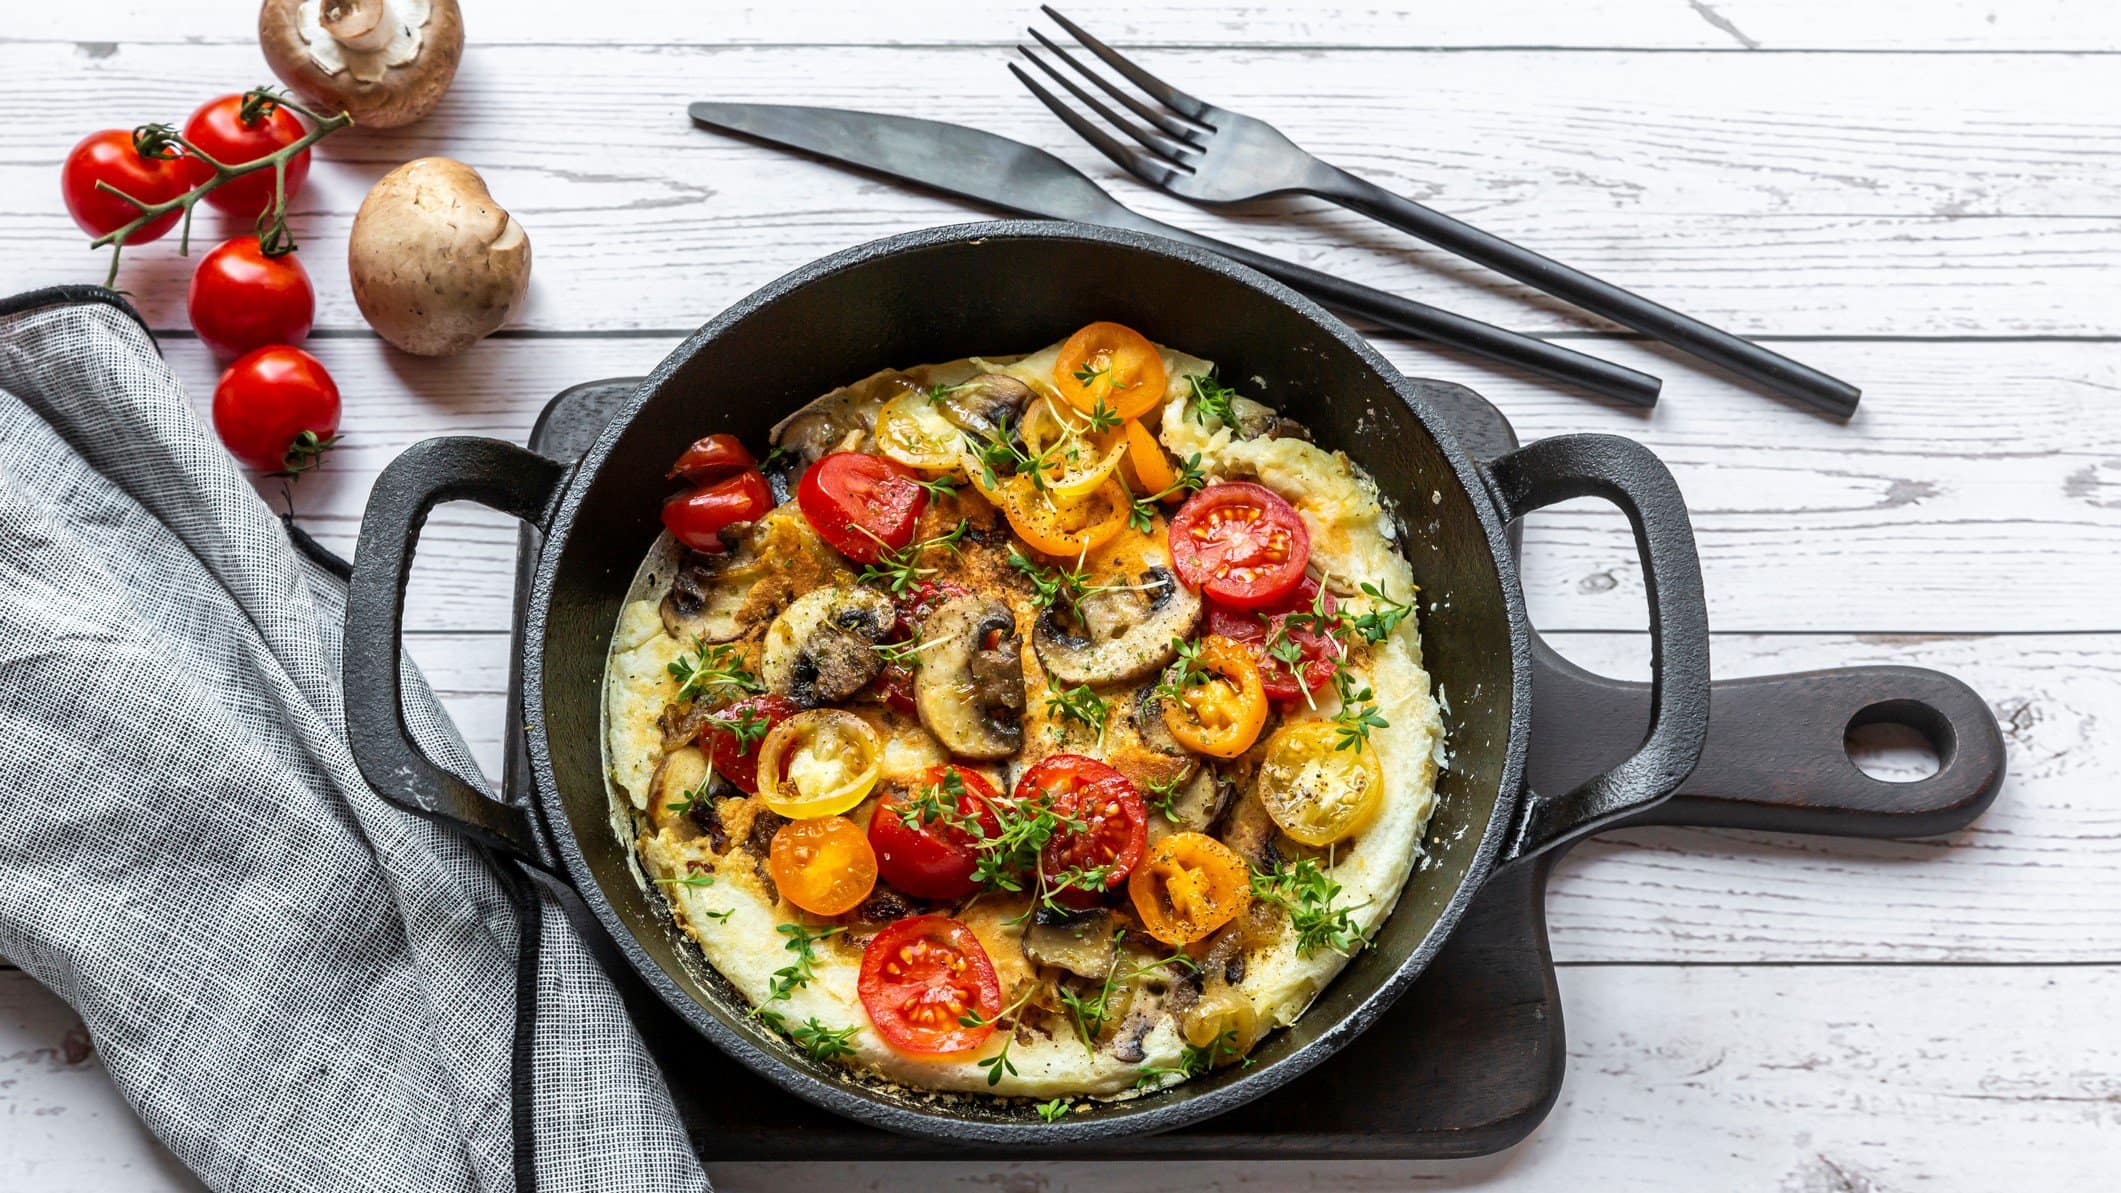 Eine gusseiserne Pfanne mit einem Omelett mit Pilzen und Tomaten sowie Oregano in der Draufsicht auf hellem Untergrund. Daneben liegen Besteck, ein paar Tomaten und Pilze sowie ein Geschirrtuch.